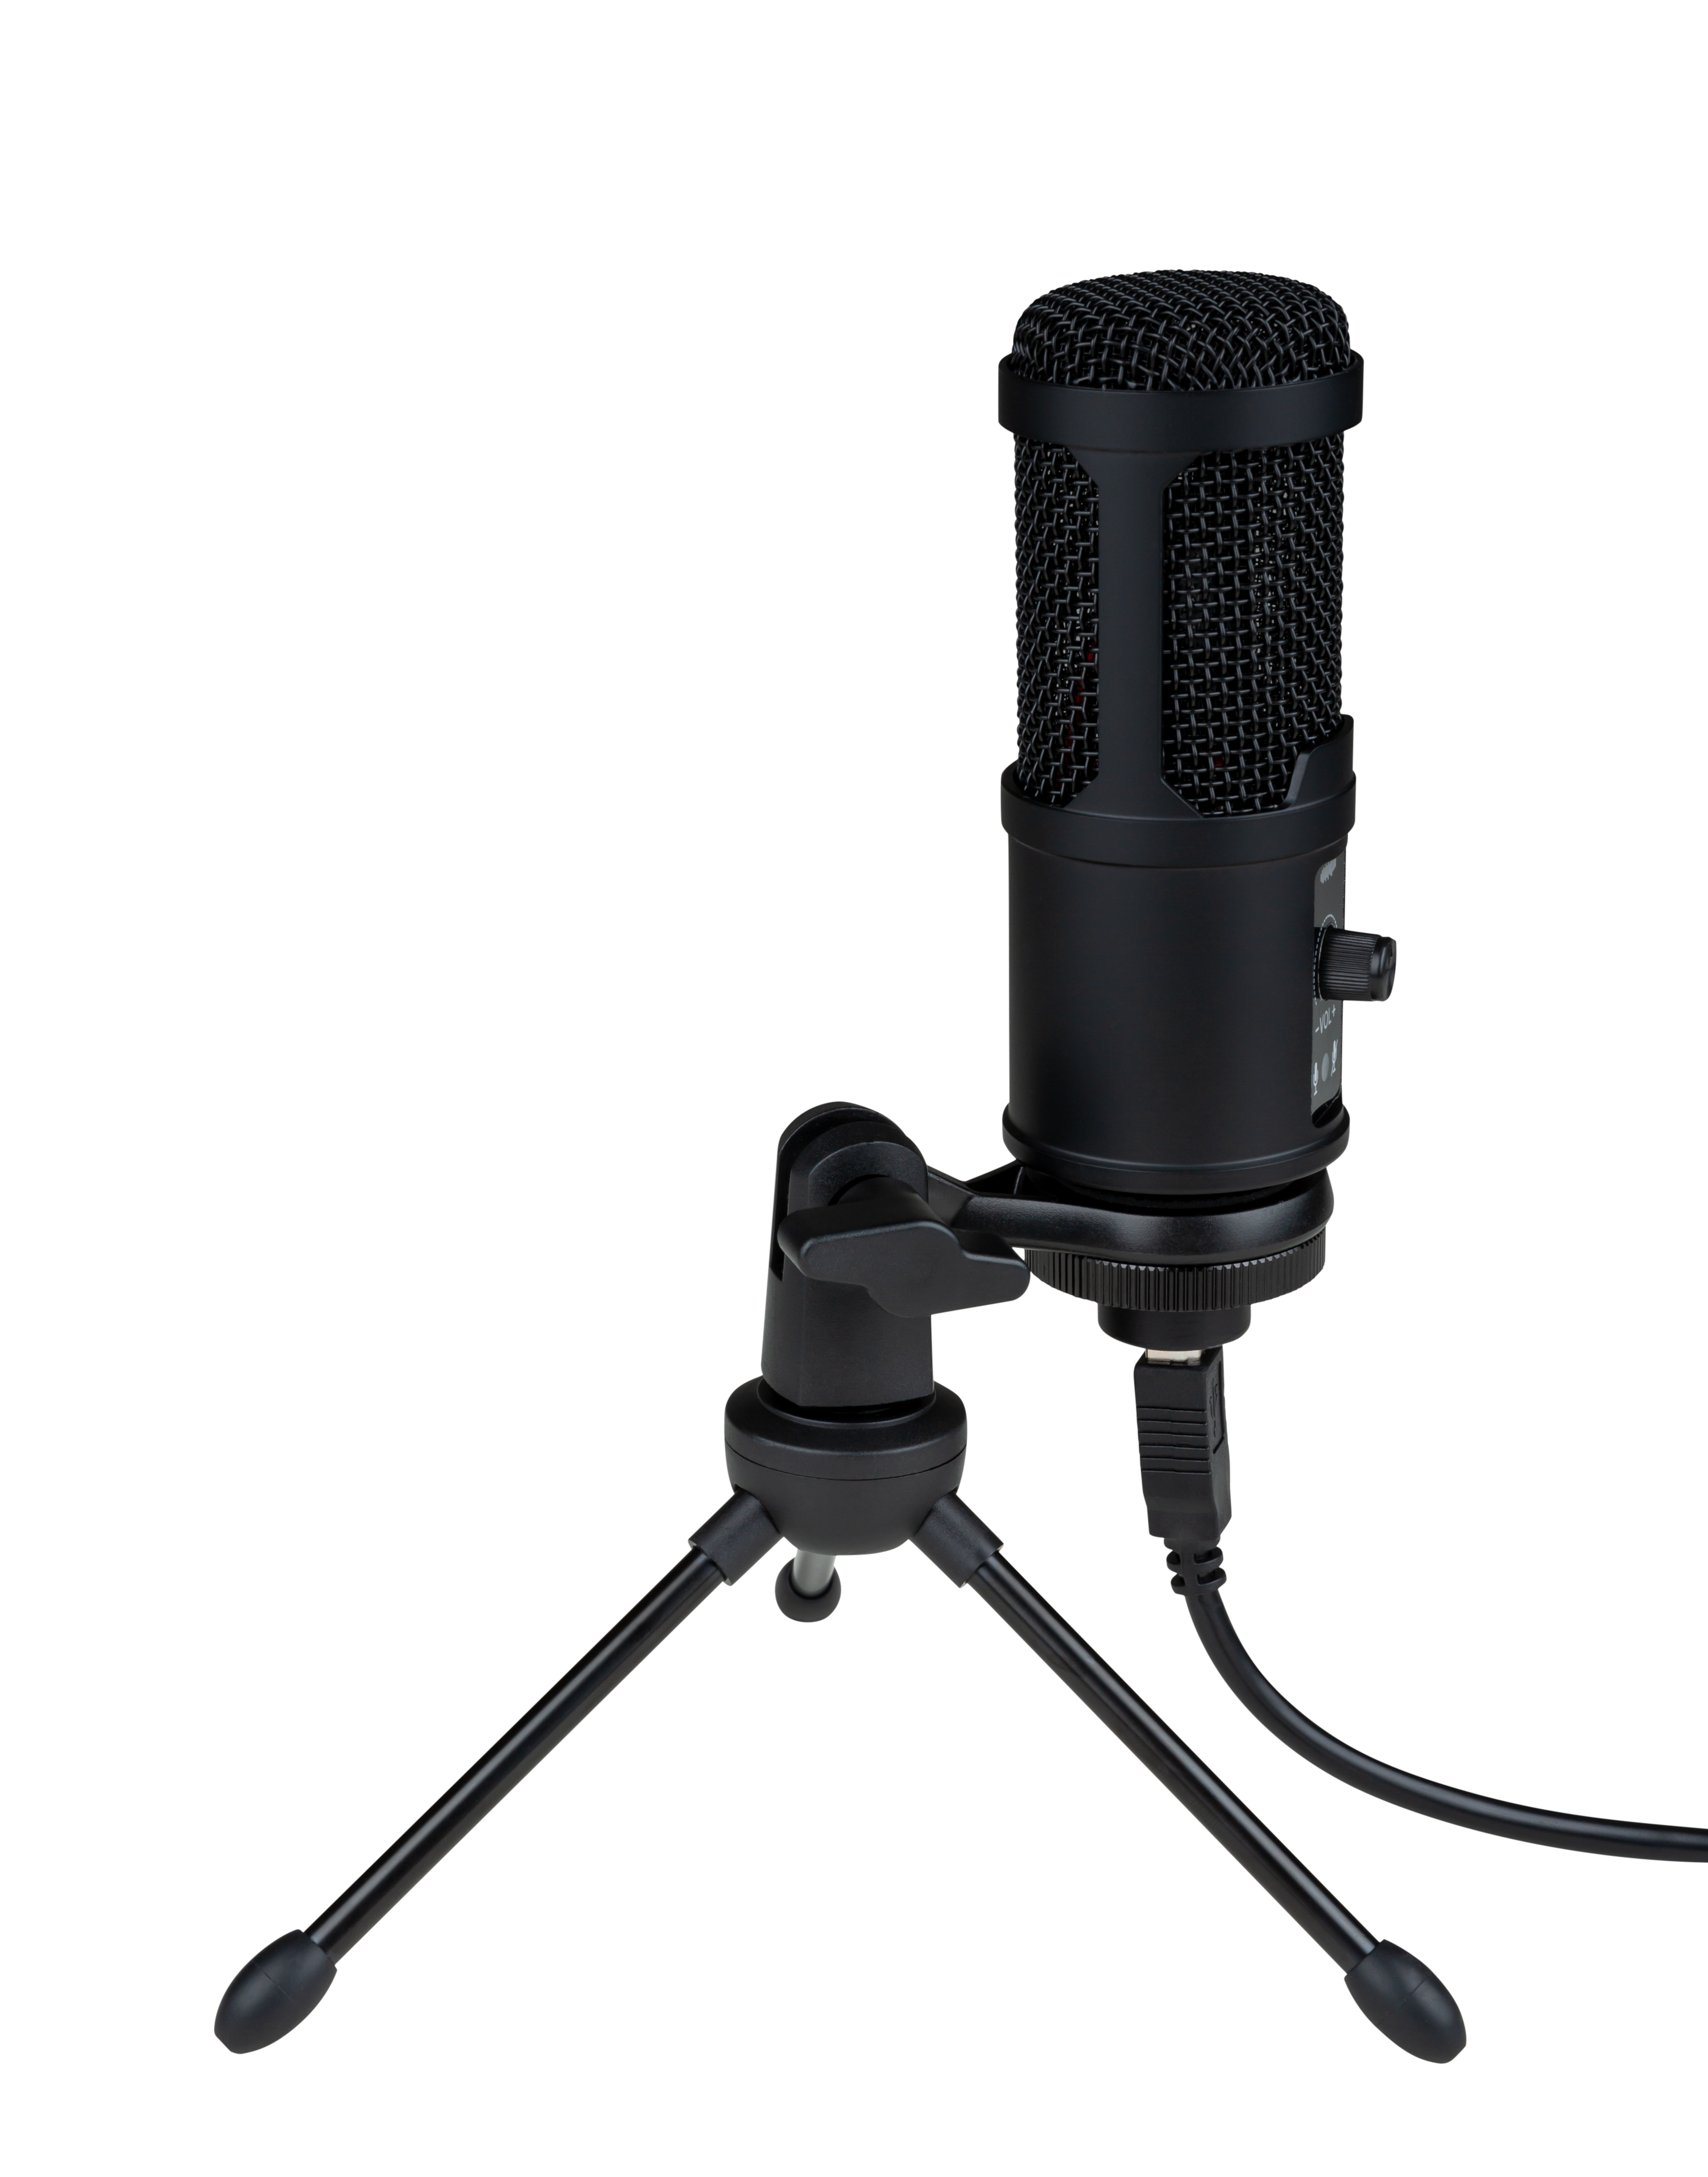 Multiformat Streaming Microphone